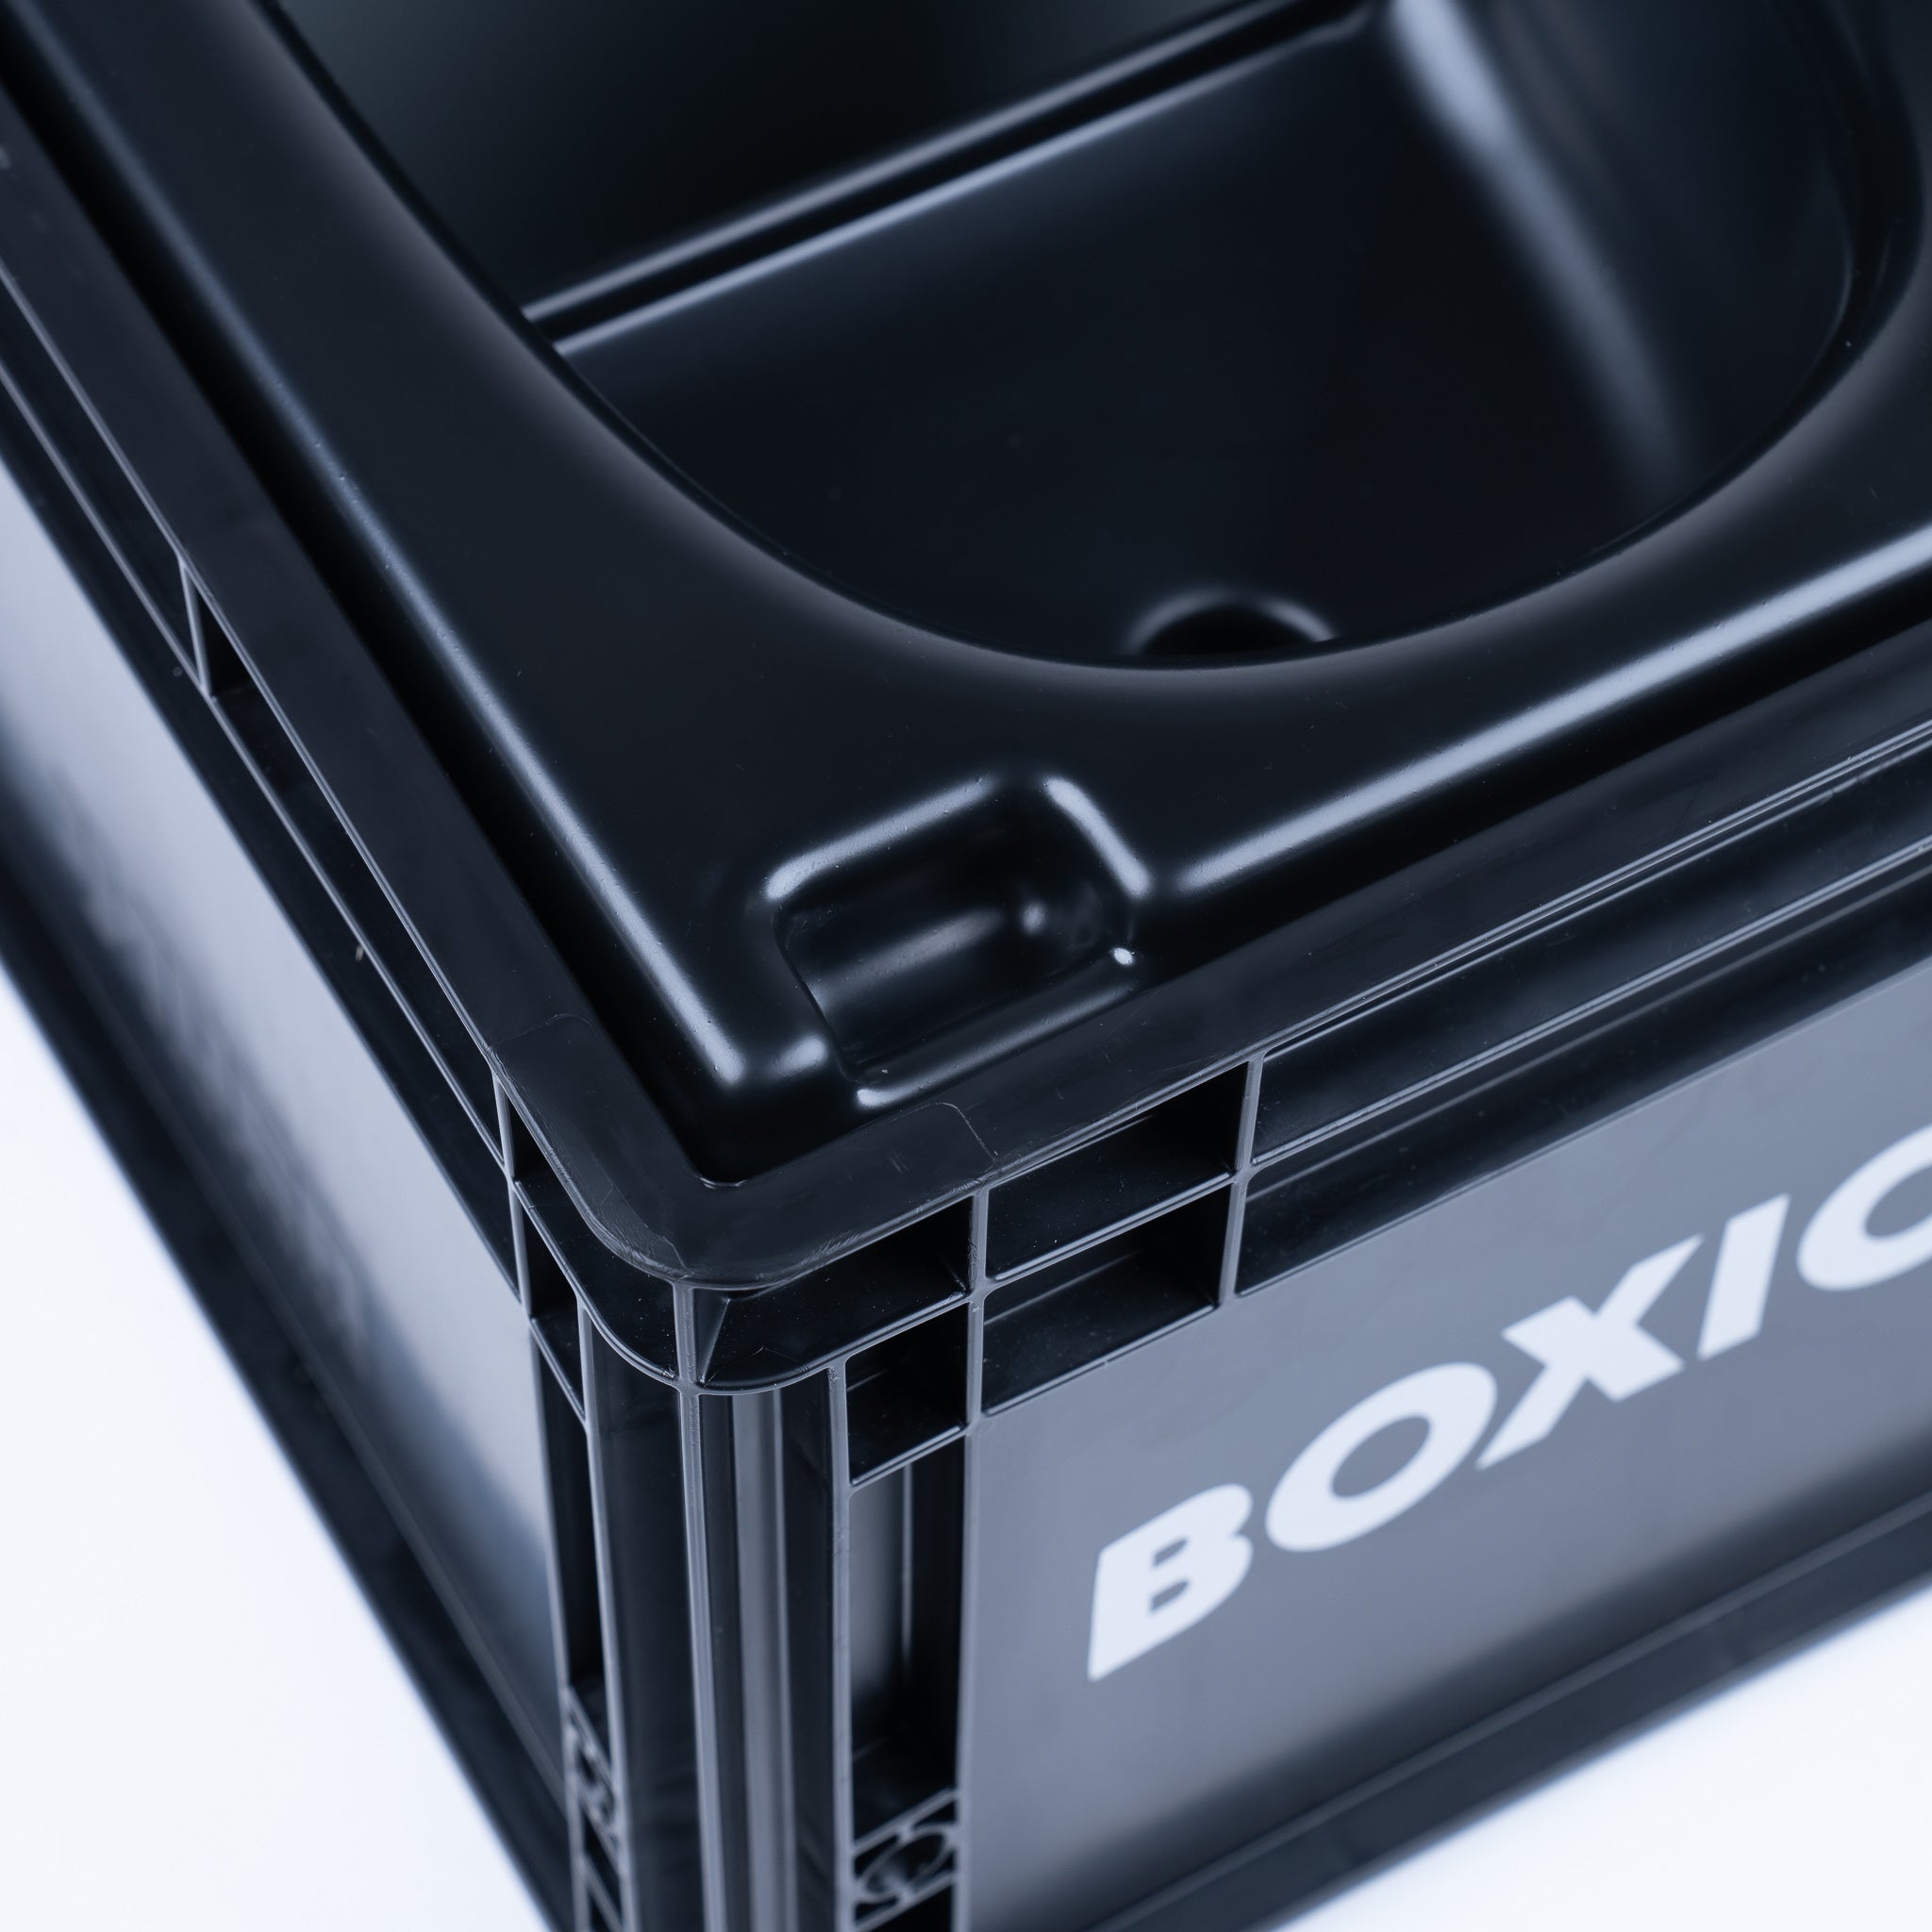 Eurobox BOXIO con taladros para BOXIO - TOILET